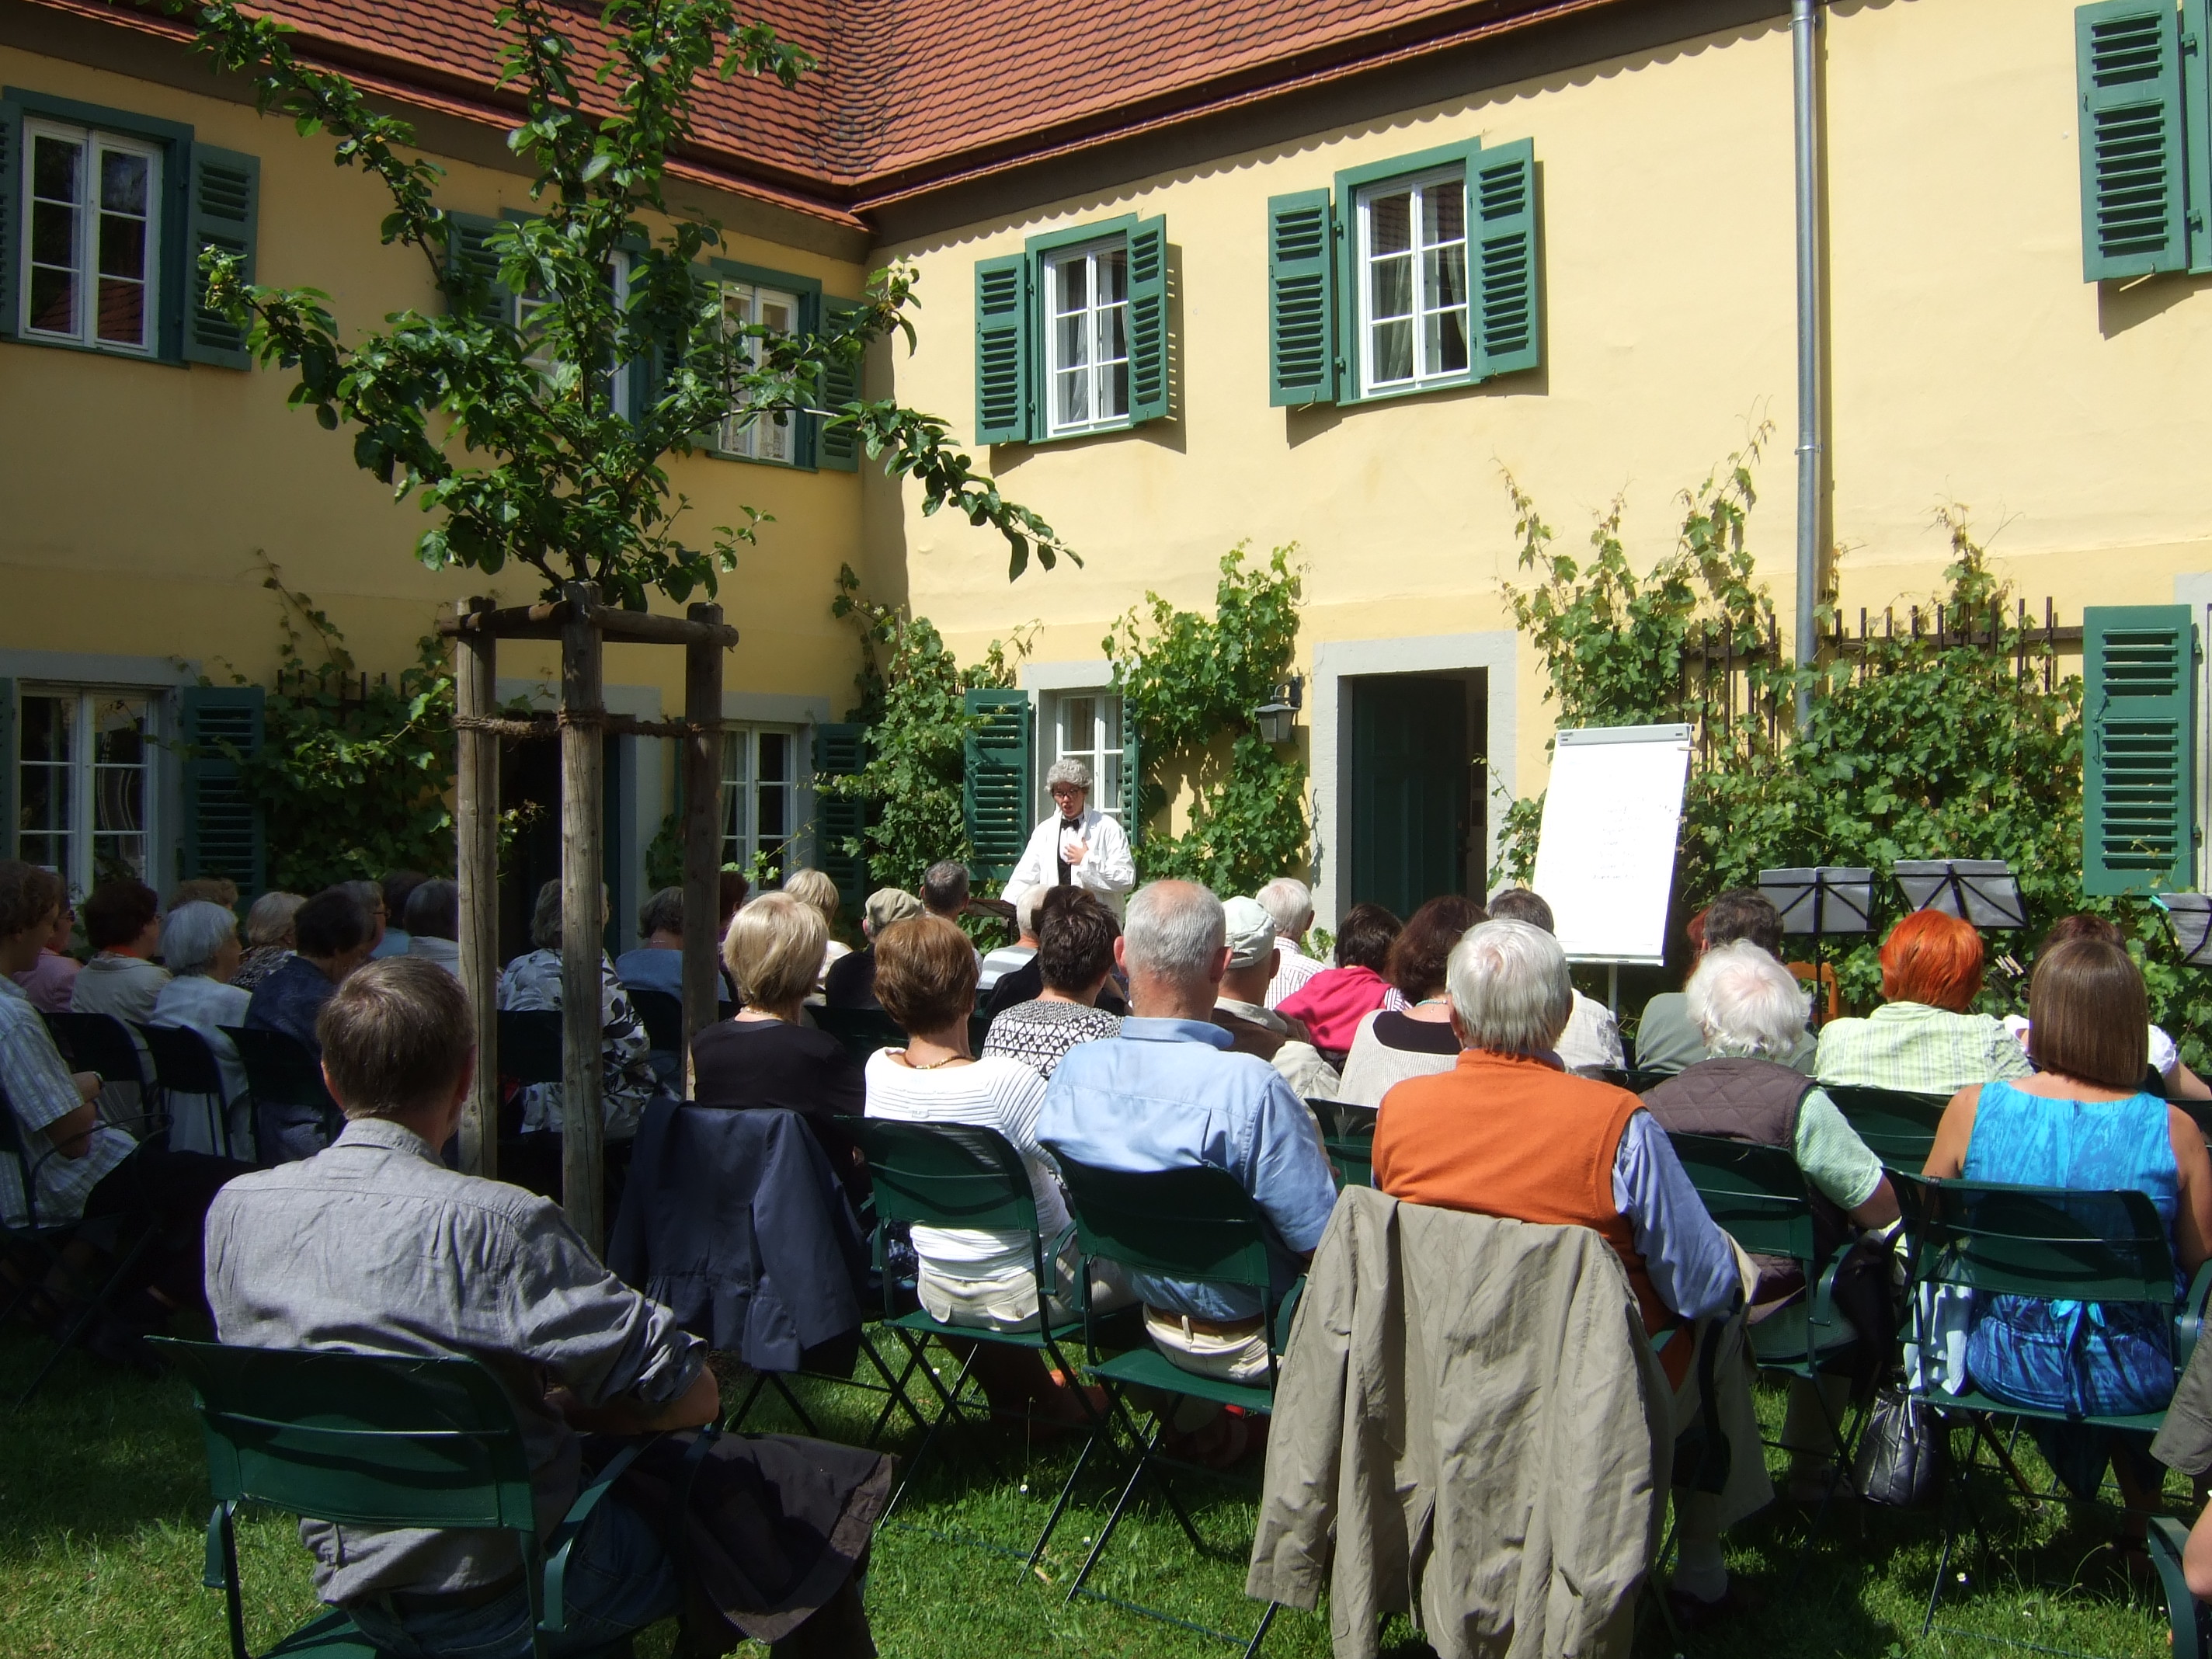 Veranstaltung im Garten des Carl Maria von Weber Museums. Die Gäste sitzen im Garten und schauen zu einer verkleideten Person, die ewtas singt.